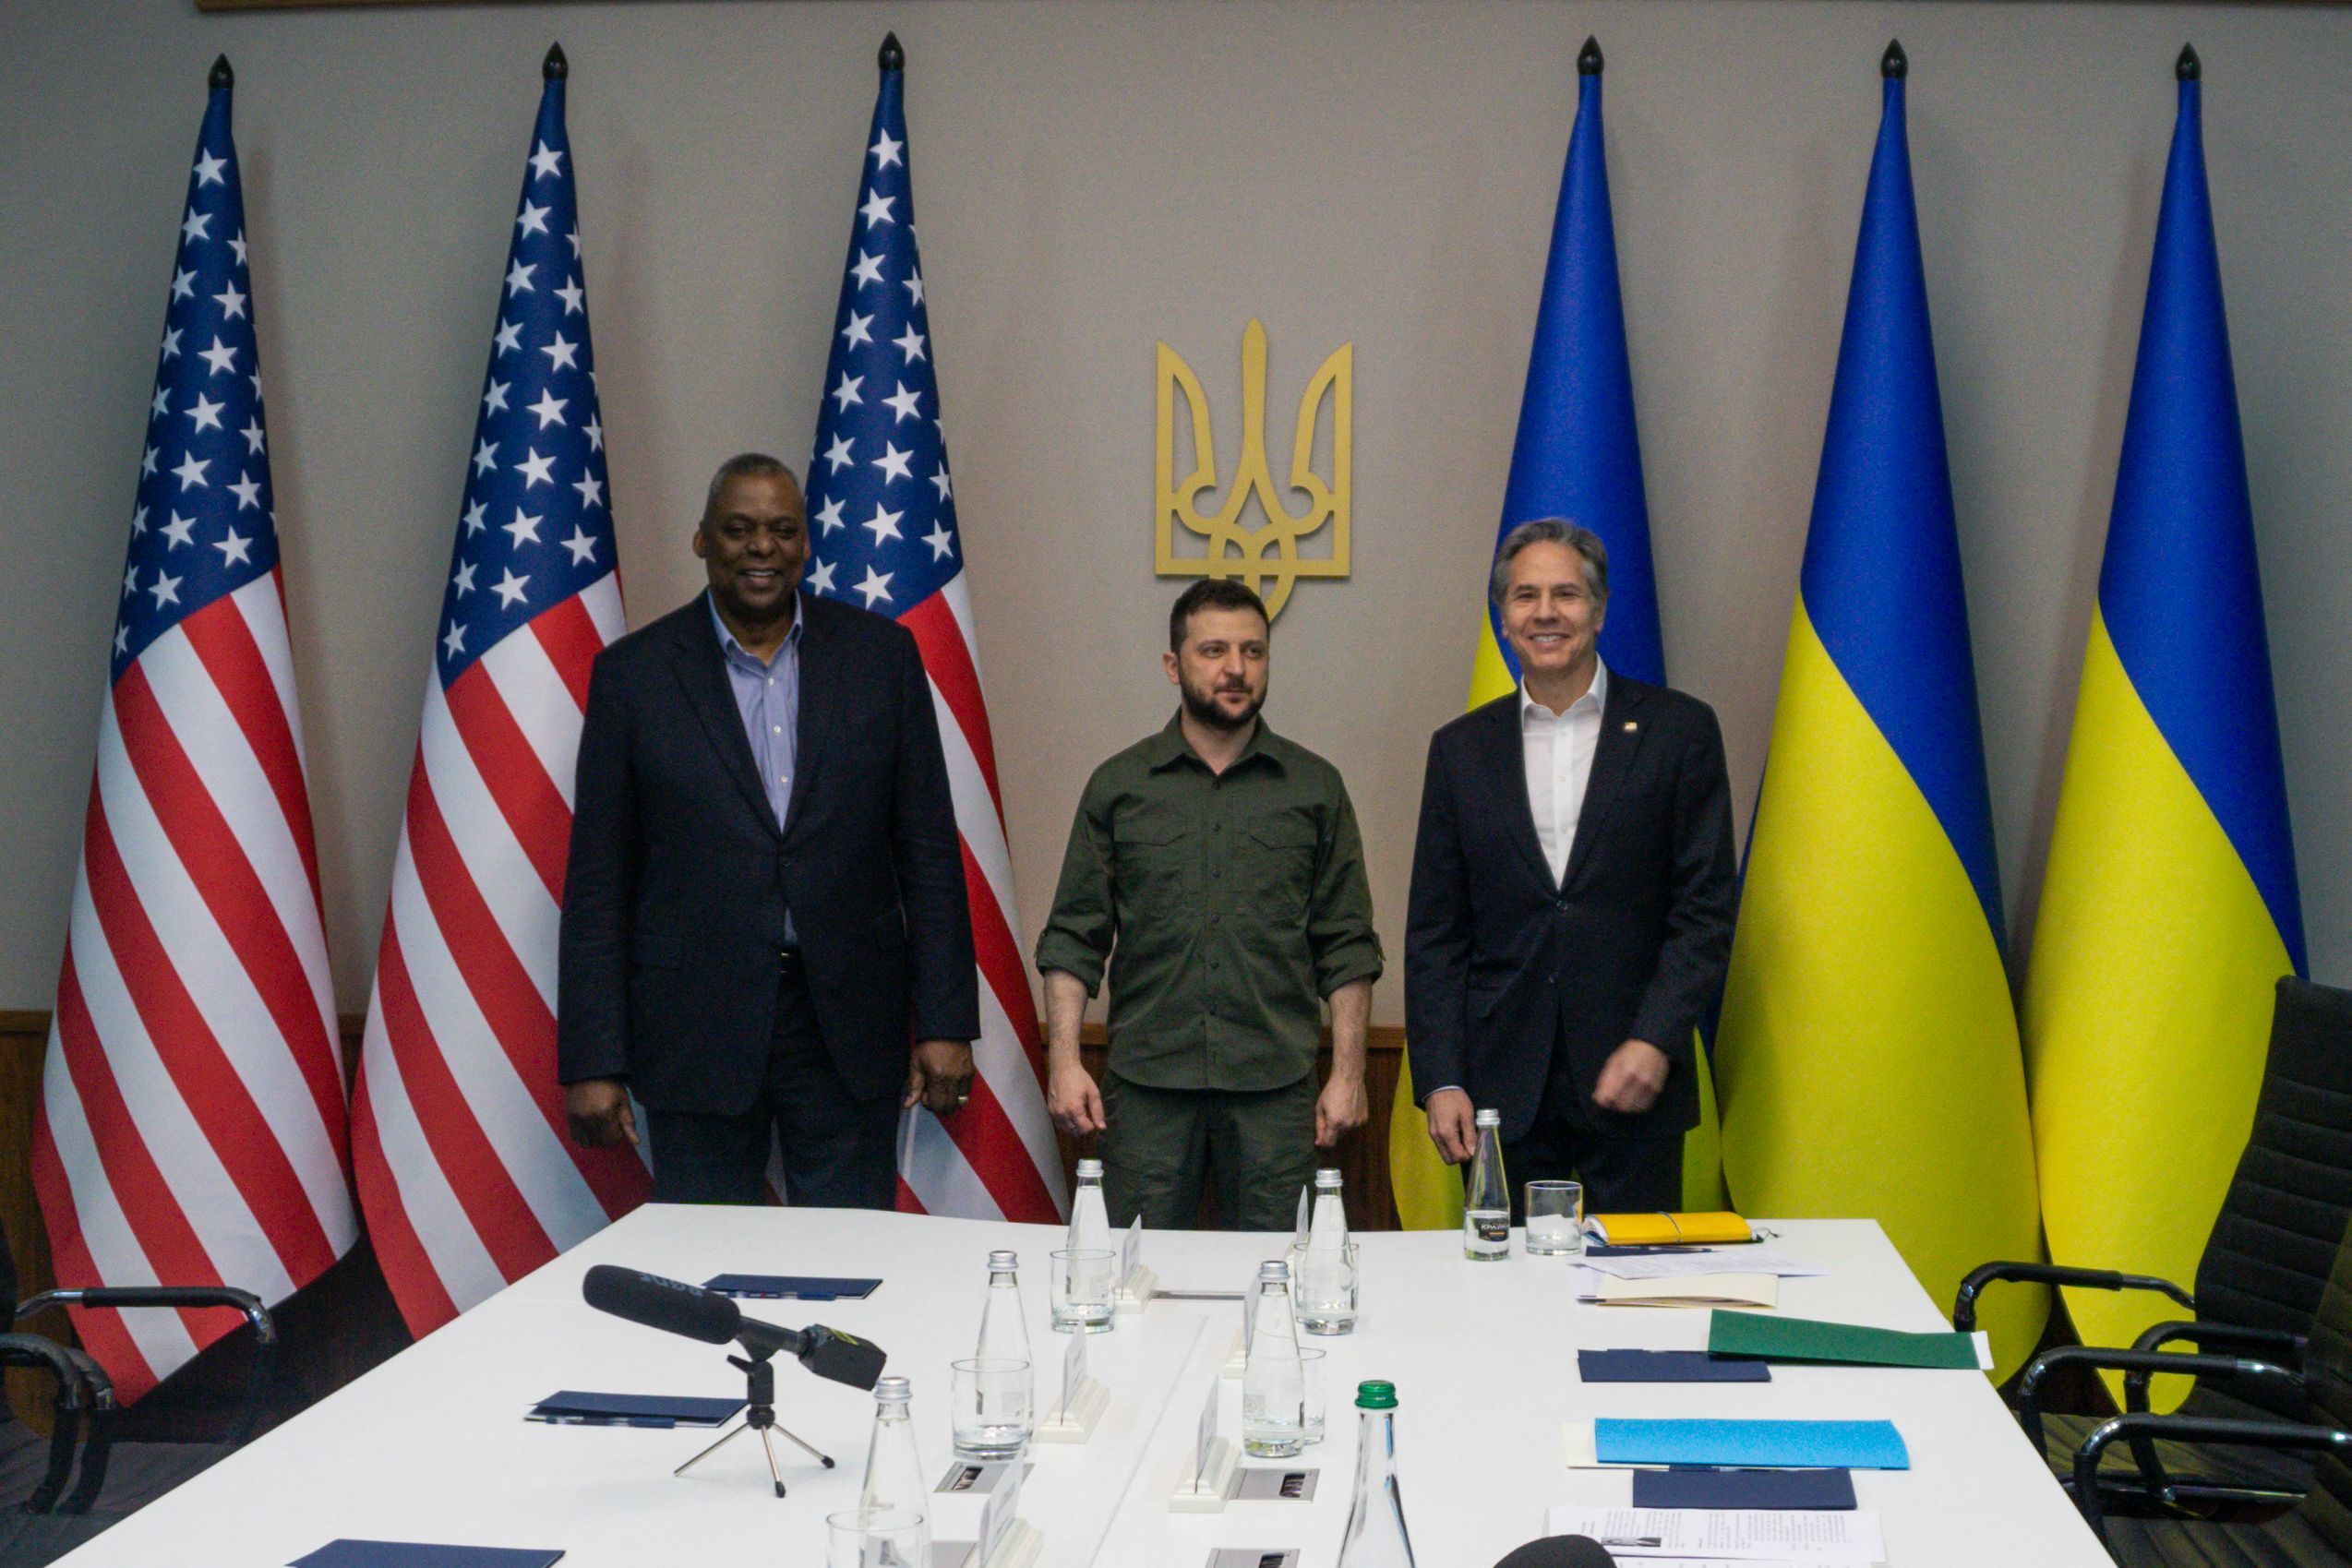 El secretario de Defensa Lloyd Austin (izda.) y el secretario de Estado Antony Blinken (dcha.) con el presidente de Ucrania Volodymyr Zelensky (centro) en Kiev, Ucrania.